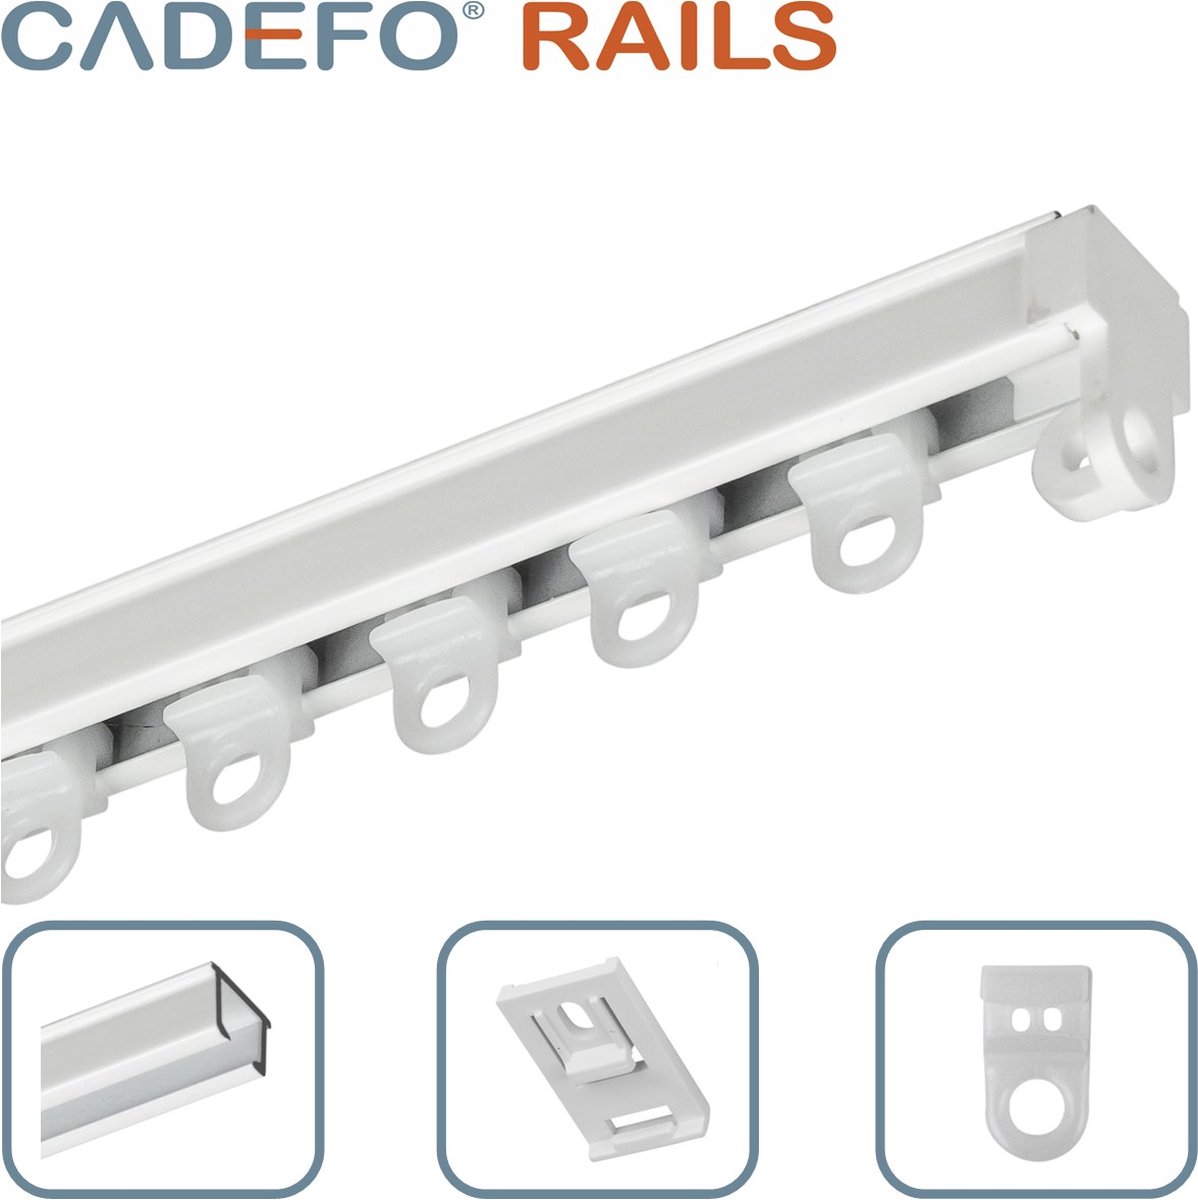 CADEFO RAILS (251 - 300 cm) Gordijnrails - Compleet op maat! - UIT 1 STUK - Leverbaar tot 6 meter - Plafondbevestiging - Lengte 254 cm